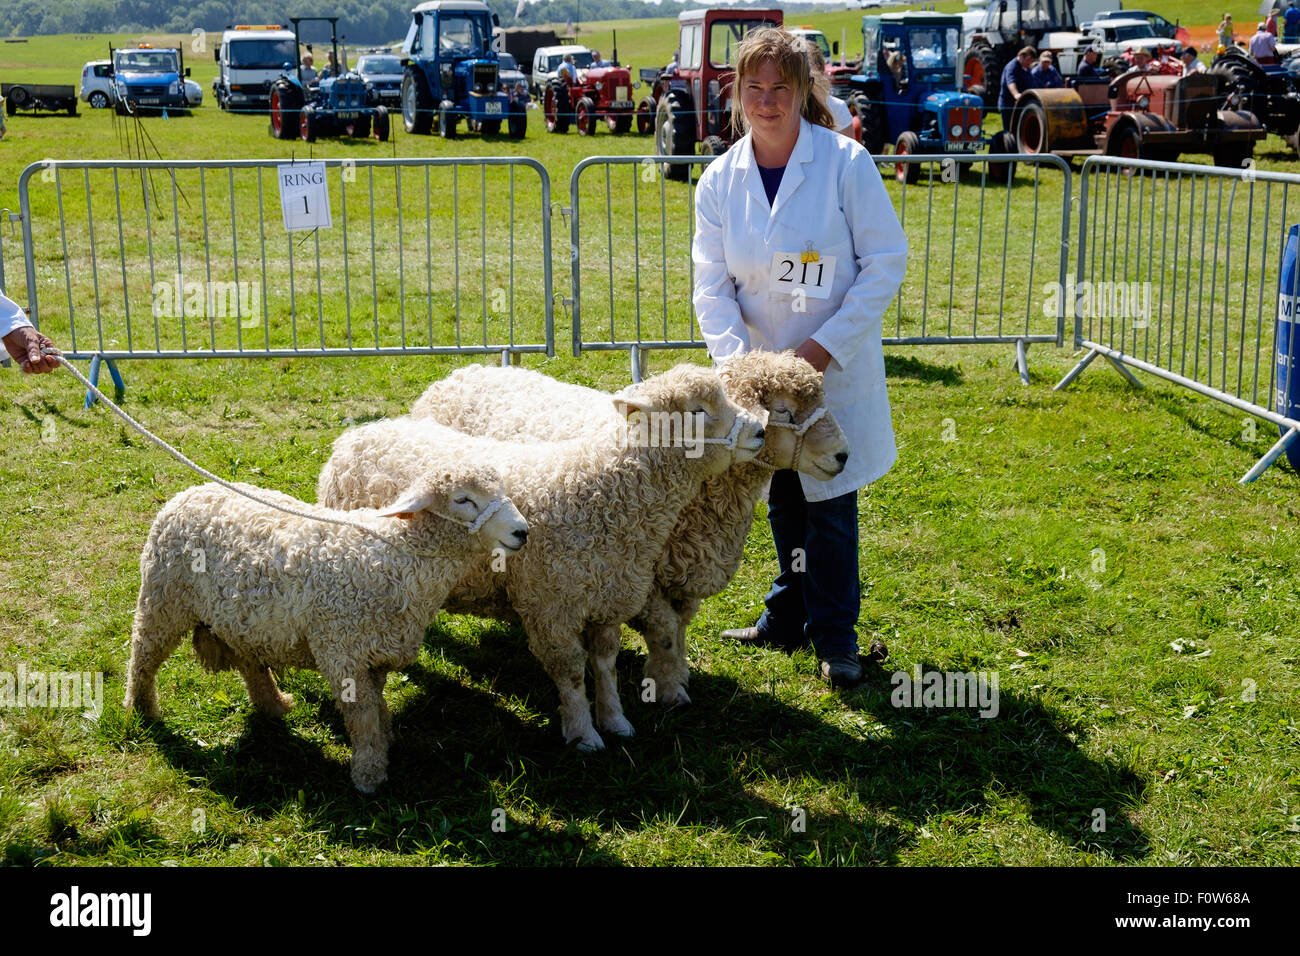 Gestionnaire en robe blanche avec groupe de trois moutons de Devon et de Cornouailles au Salon de l'agriculture de Chepstow pour juger de l'anneau. Pays de Galles Chepstow Banque D'Images